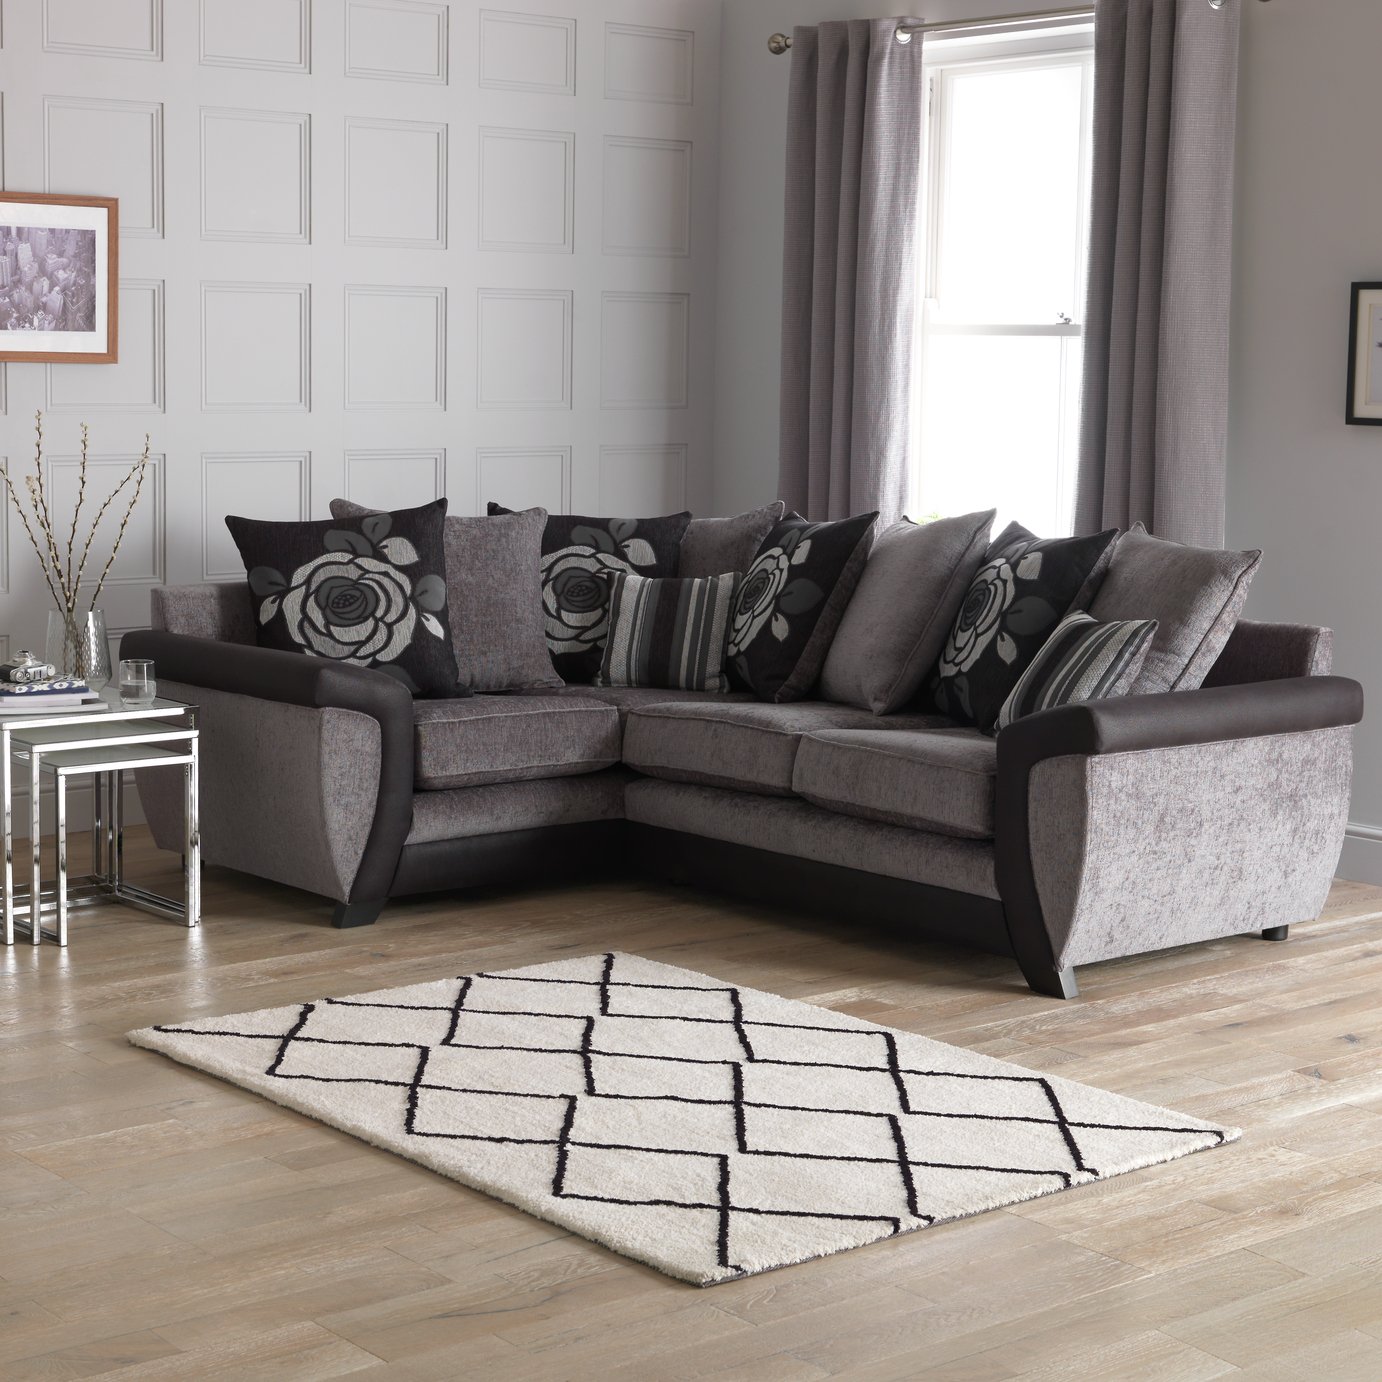 Argos Home Illusion Left Corner Fabric Sofa Review